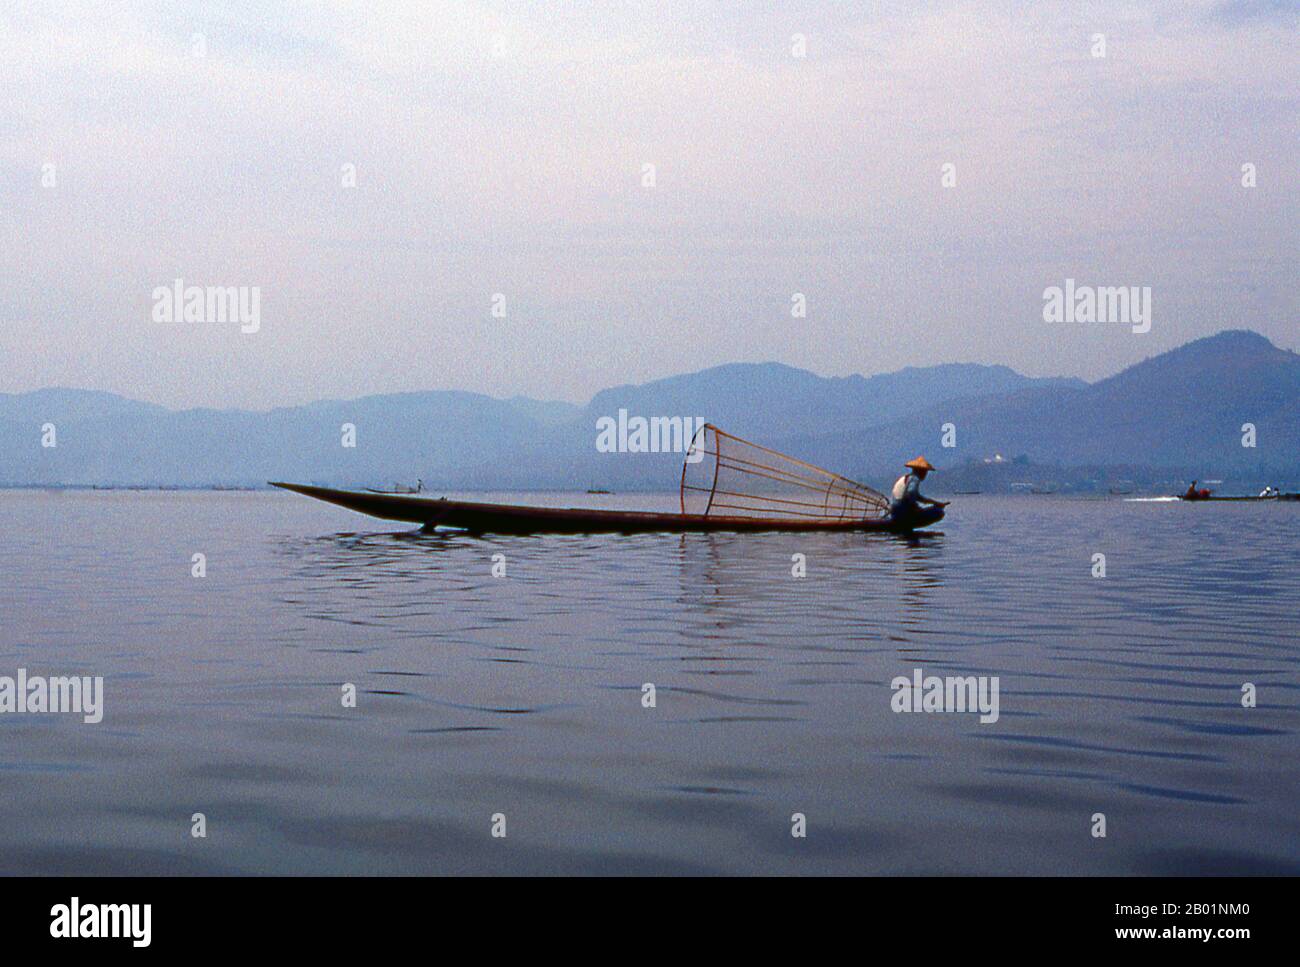 Birmania/Myanmar: Un pescador Intha en su barco en el lago Inle, en el estado de Shan. El lago Inle es un lago de agua dulce situado en el municipio de Nyaungshwe del distrito de Taunggyi del estado de Shan, parte de las colinas de Shan en Myanmar (Birmania). Es el segundo lago más grande de Myanmar con una superficie estimada de 44,9 millas cuadradas (116 km2), y uno de los más altos a una altitud de 2.900 pies (880 m). Los habitantes del lago Inle (llamado Intha), unos 70.000 de ellos, viven en cuatro ciudades que bordean el lago, en numerosos pueblos pequeños a lo largo de las orillas del lago, y en el lago mismo. Foto de stock